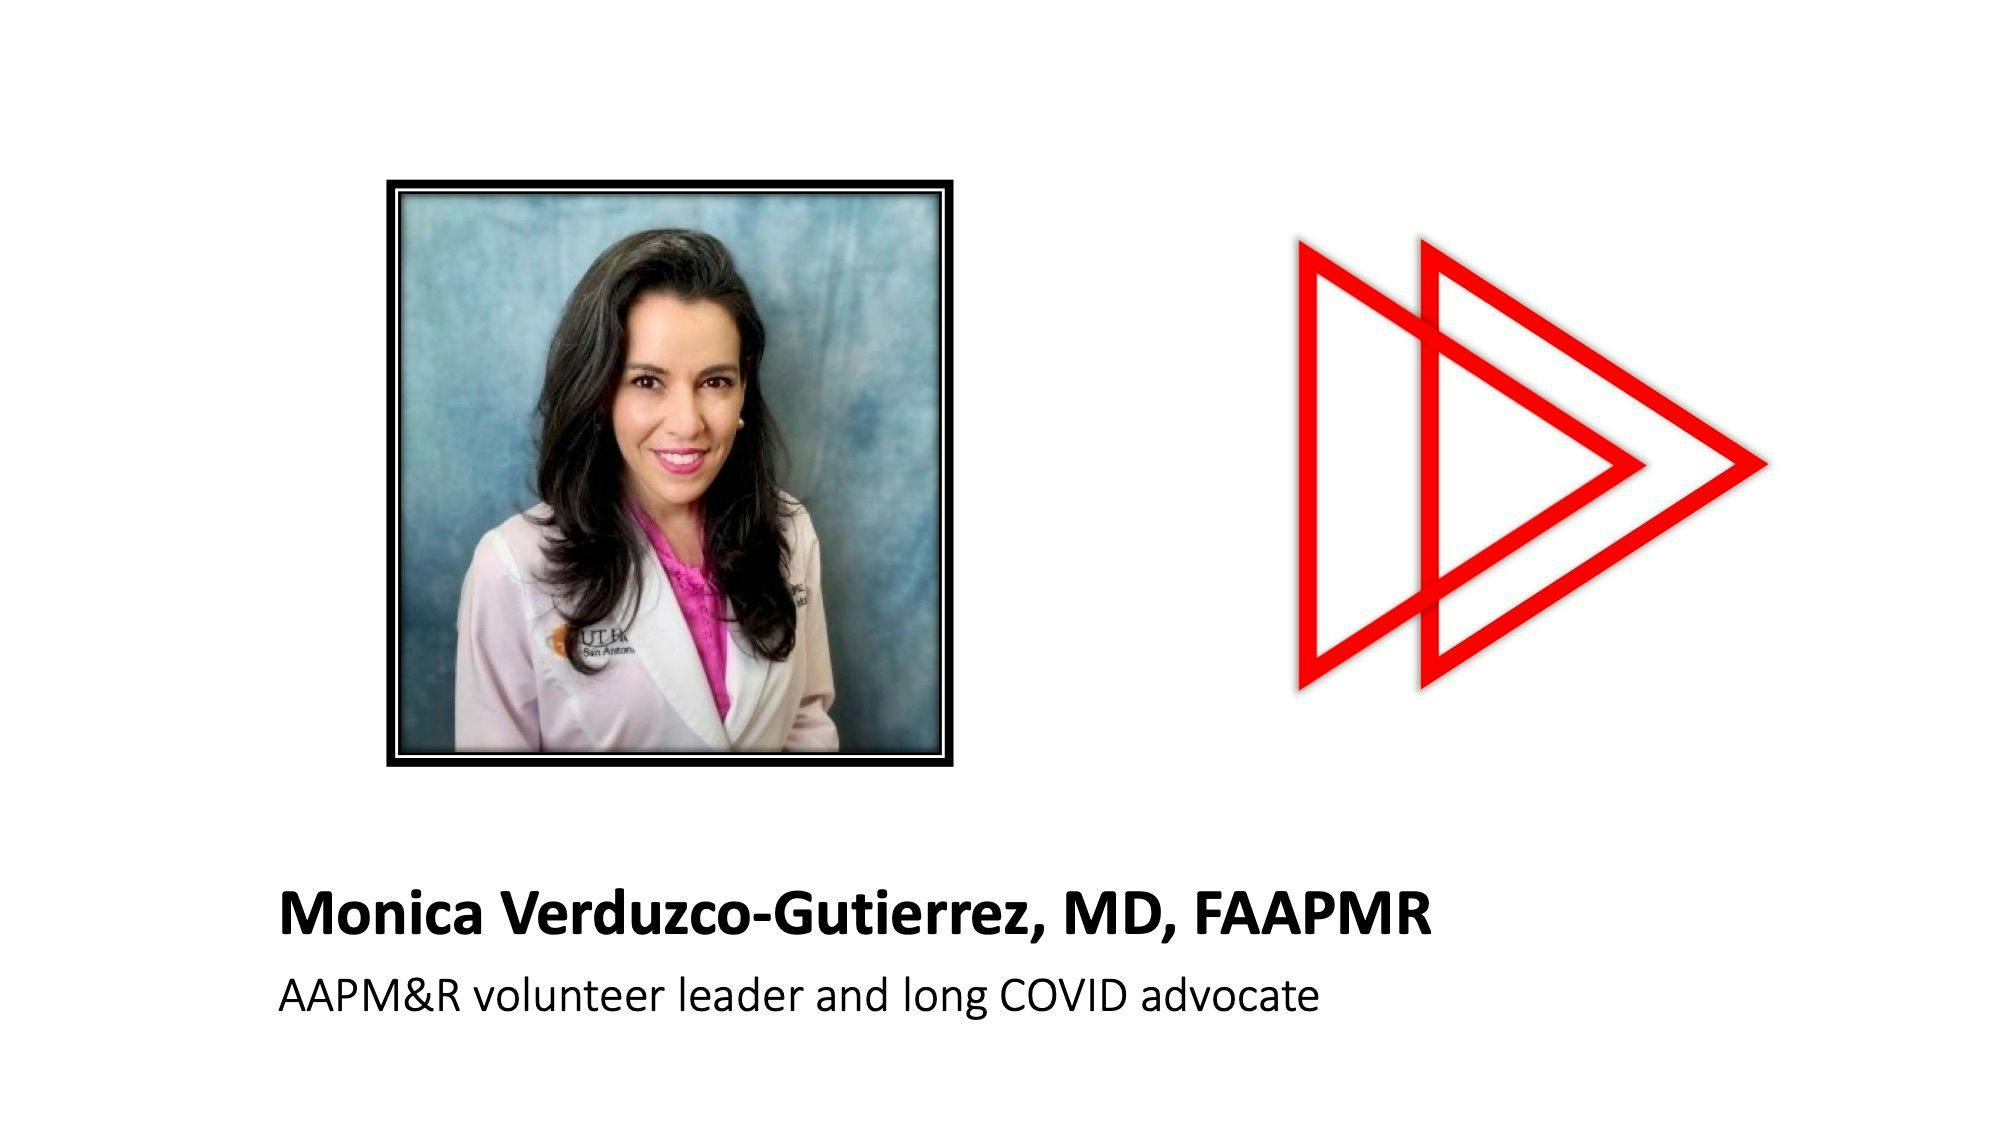 Monica Verduzco-Gutierrrez, MD, FAAPMR, gives expert advice